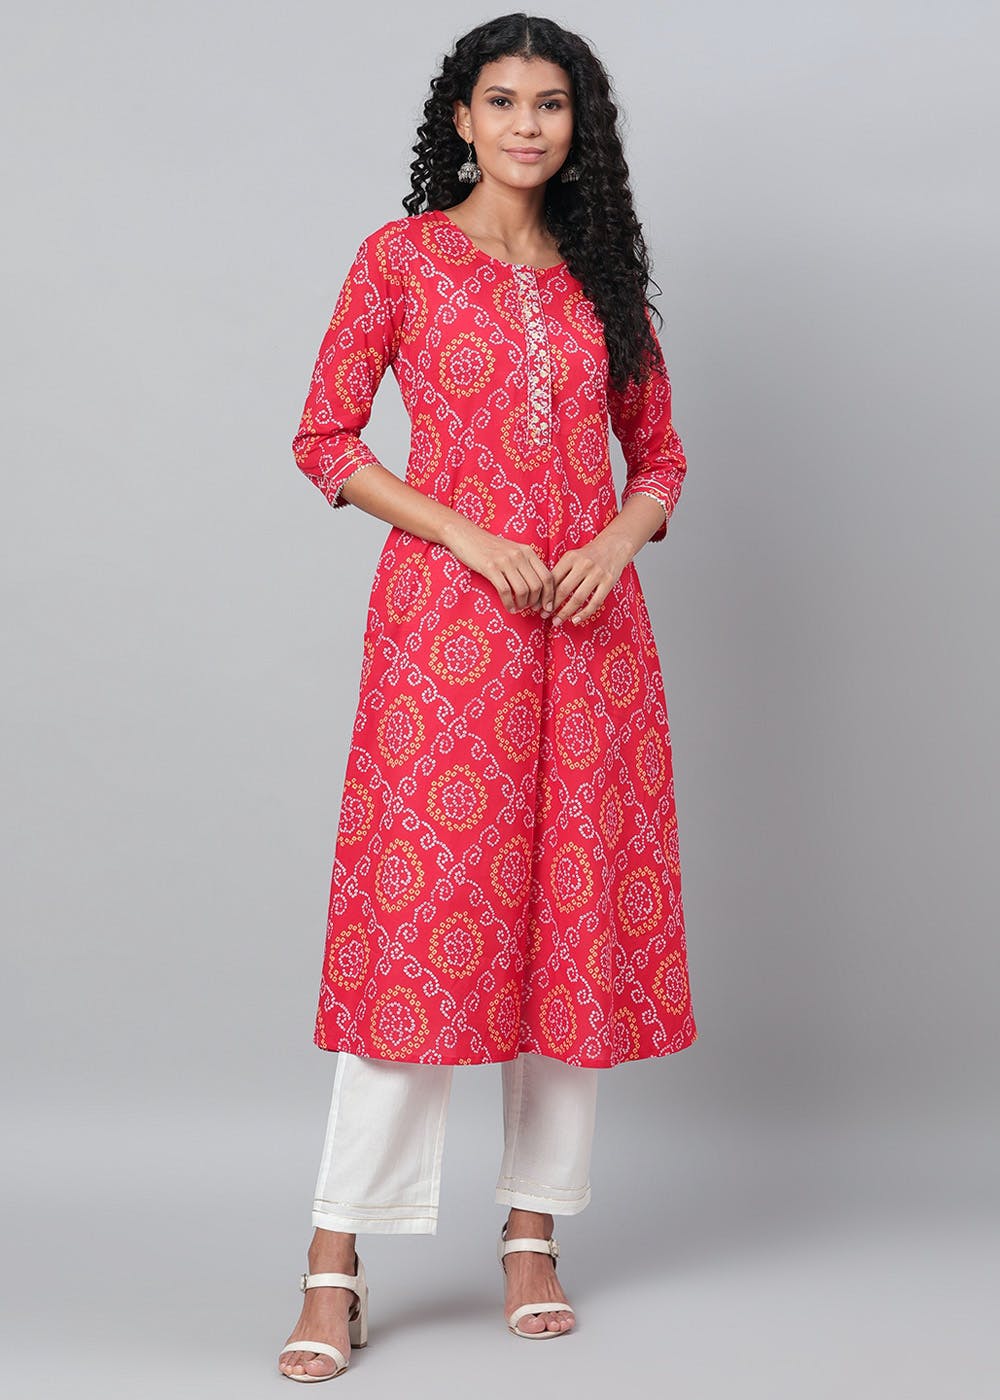 Get Bandhani Pattern Red Kurta & Pants Set at ₹ 1153 | LBB Shop